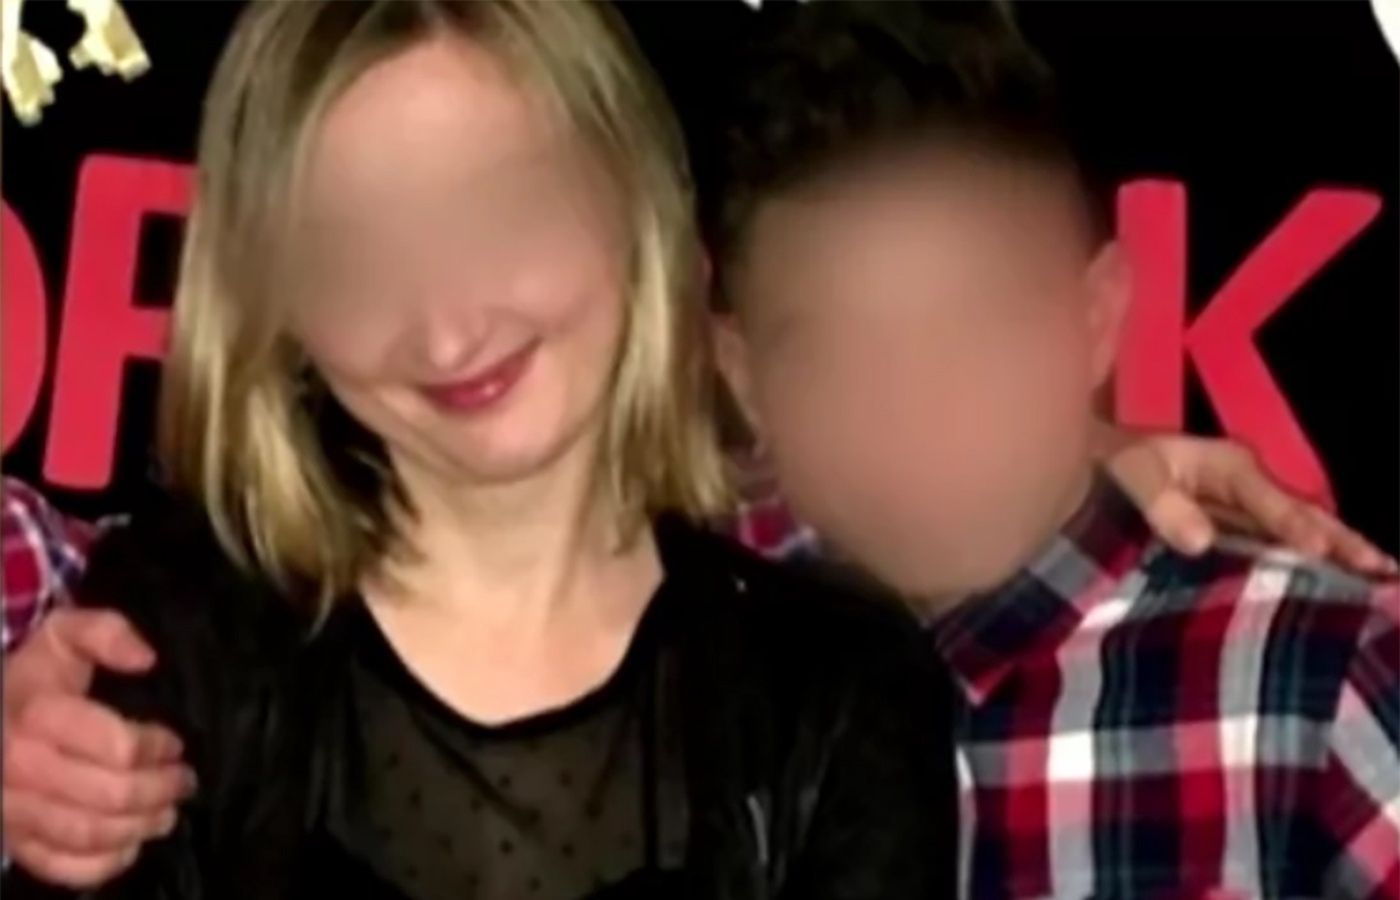 Skandal na Podlasiu. 14-letni uczeń ofiarą 35-letniej nauczycielki